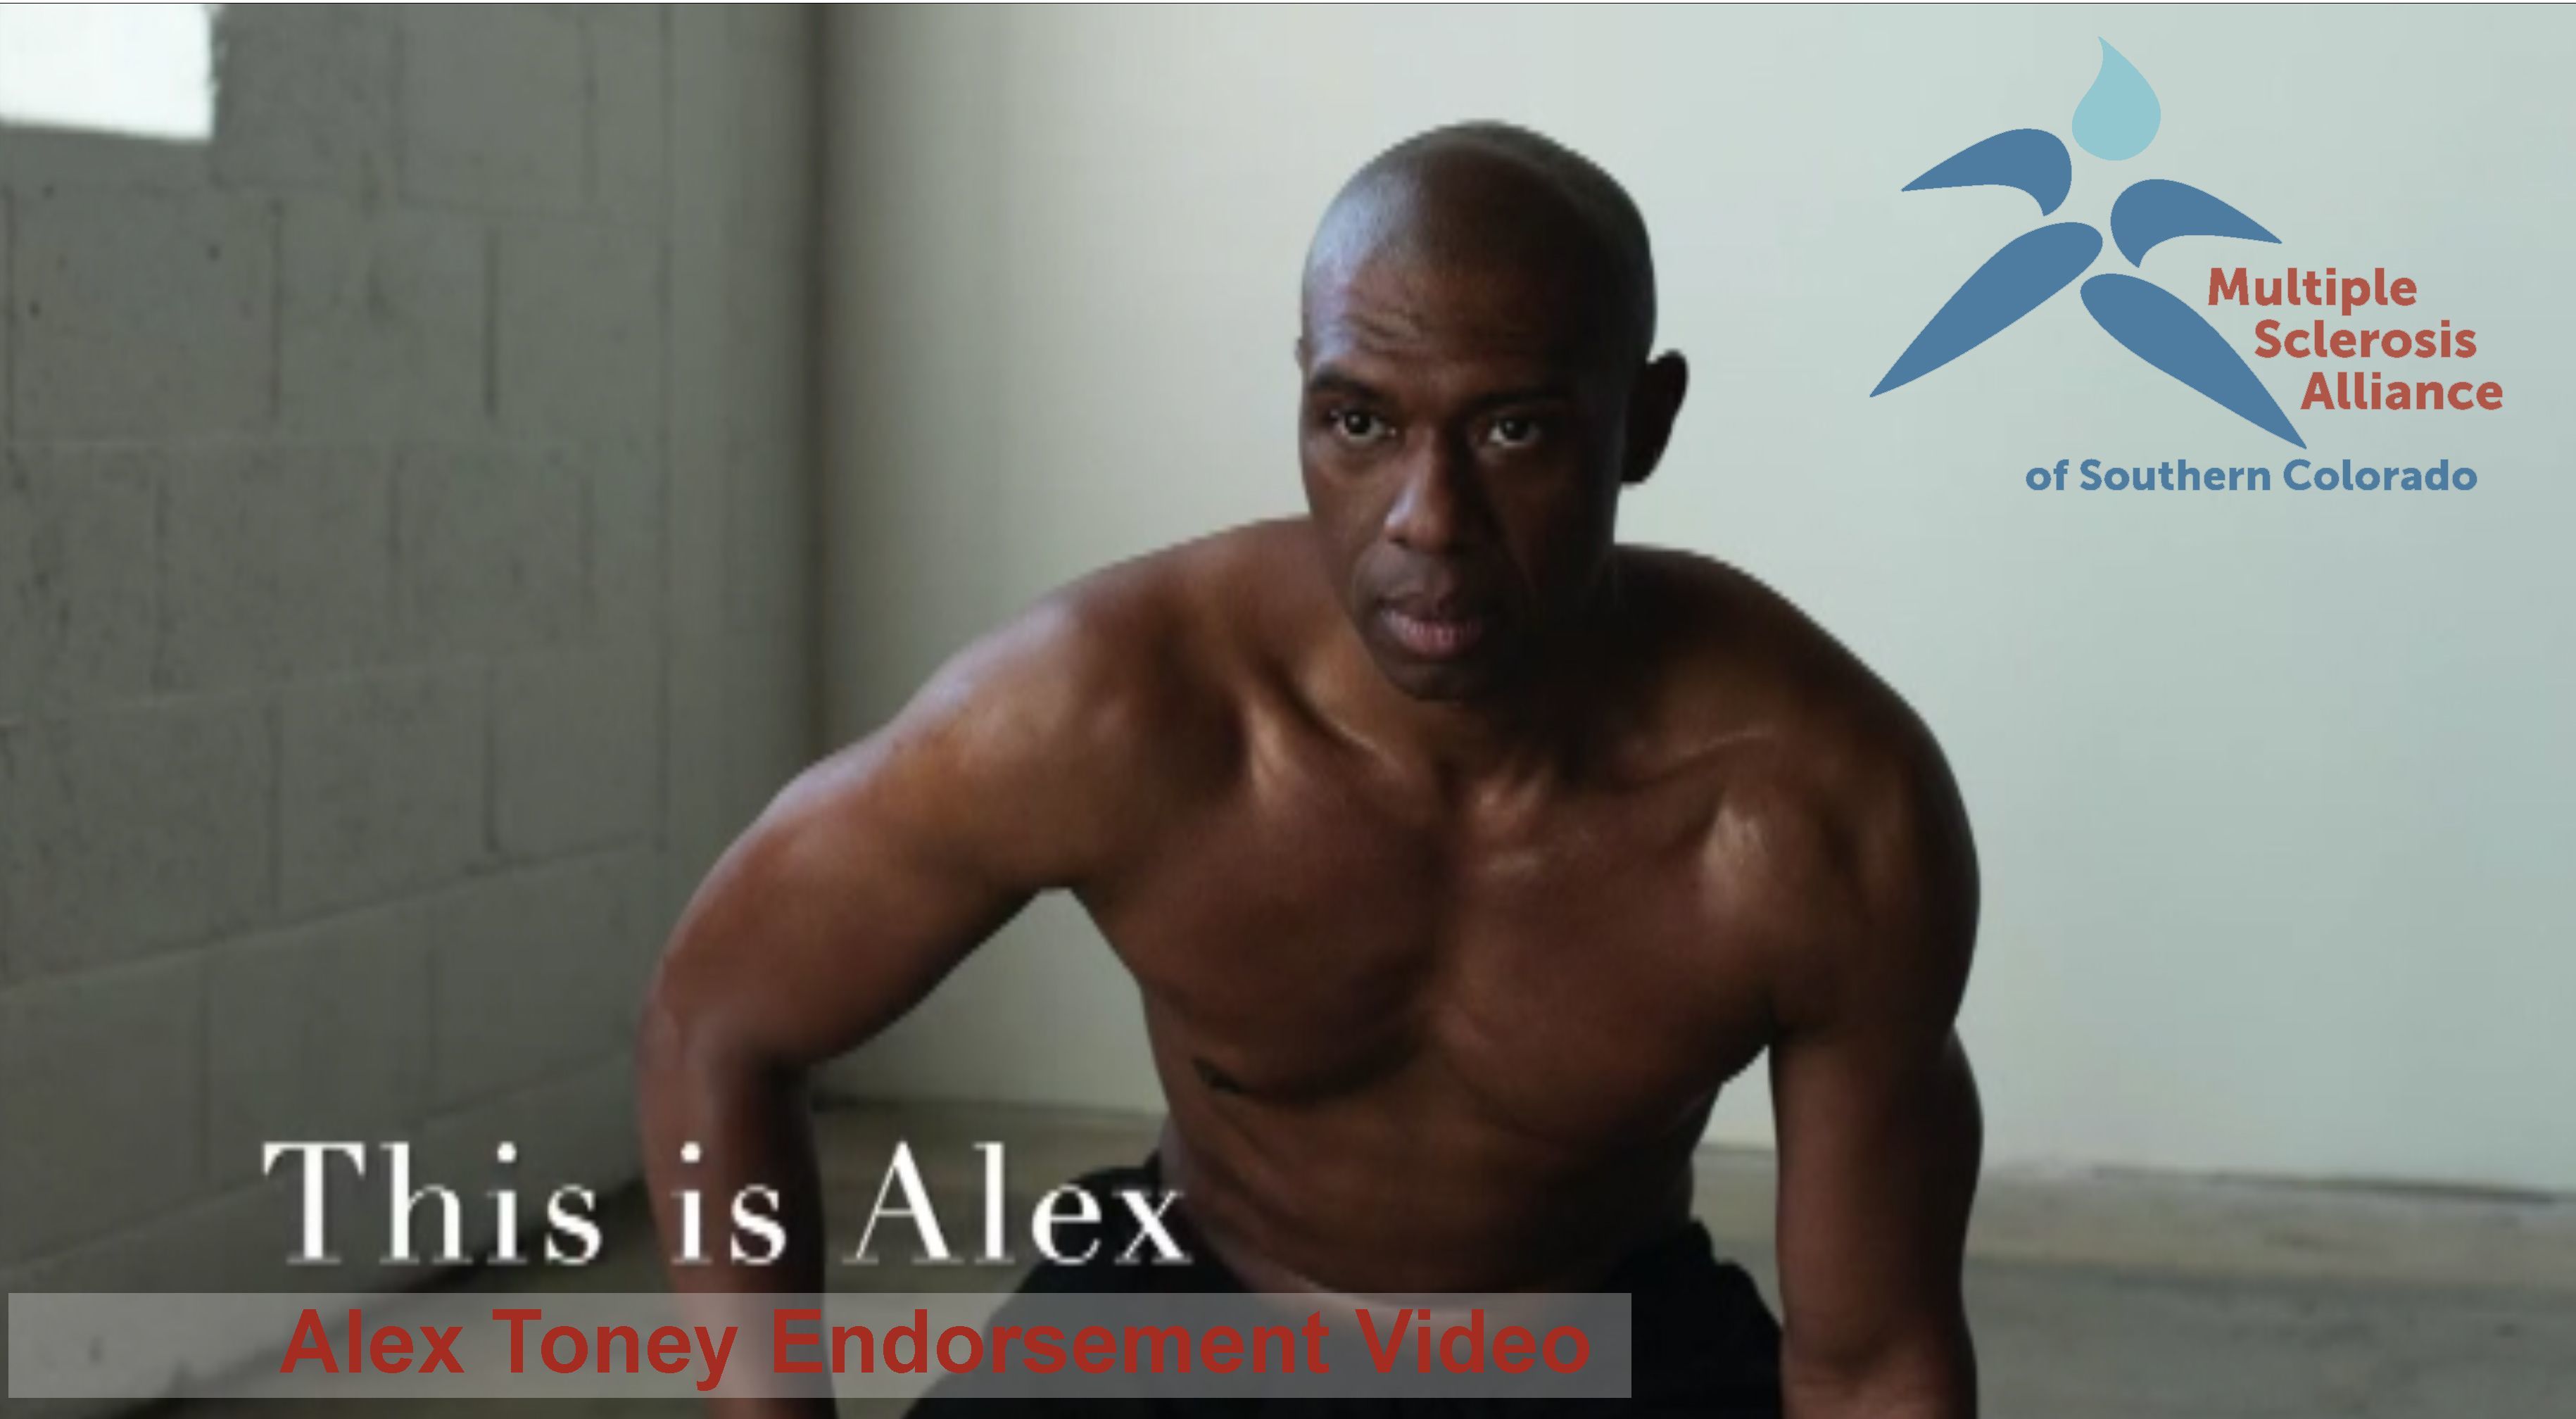 Alex Toney Endorses MSA